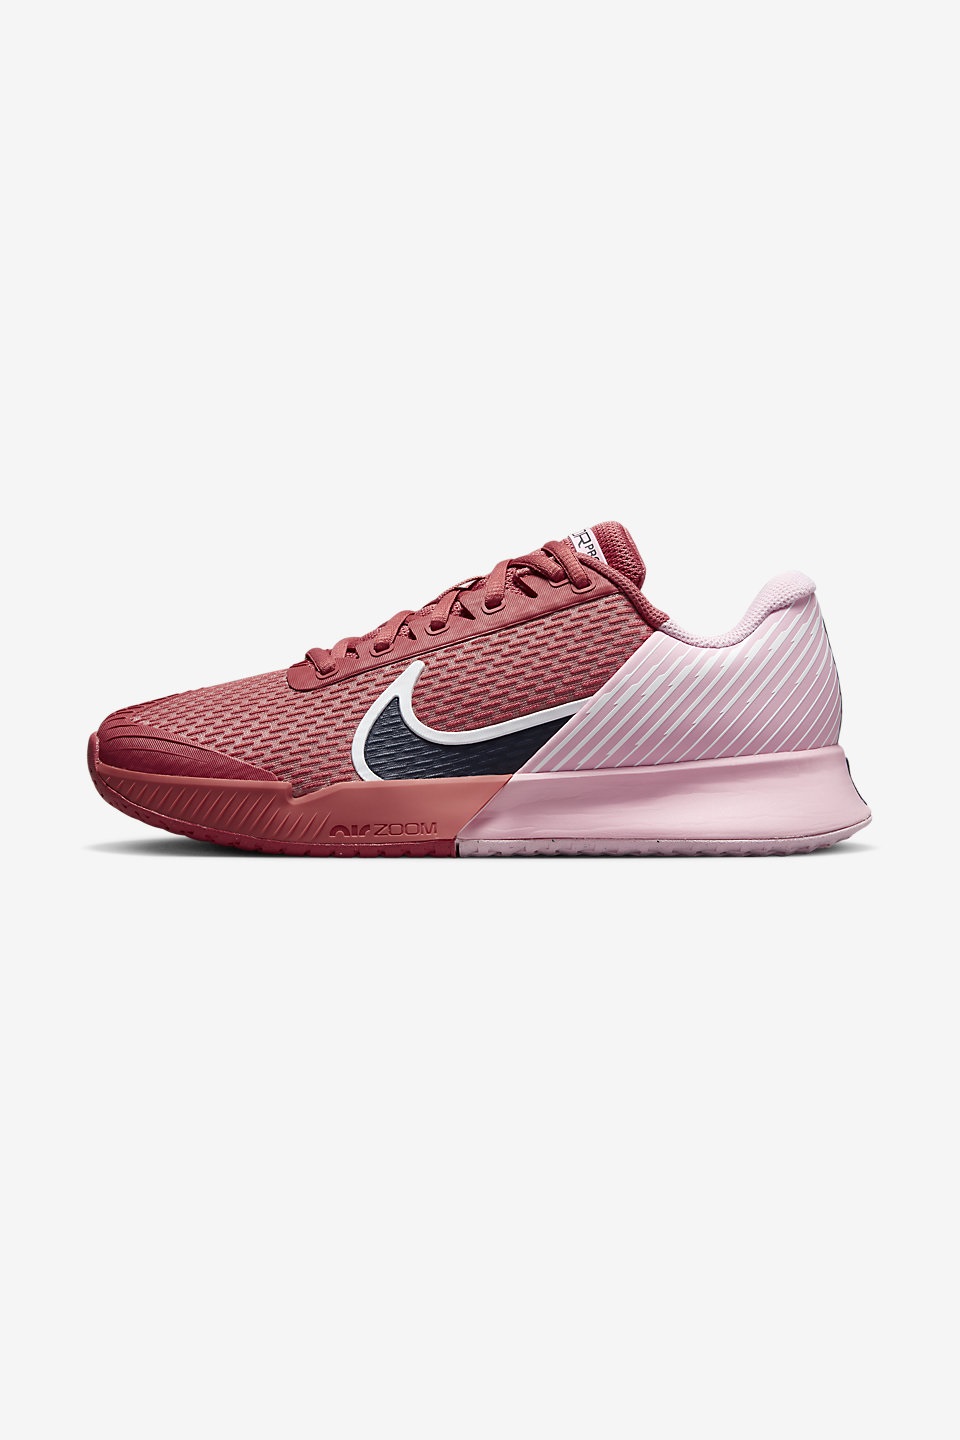 NIKE - NikeCourt Air Zoom Vapor Pro 2 Sert Kort Kadın Tenis Ayakkabısı